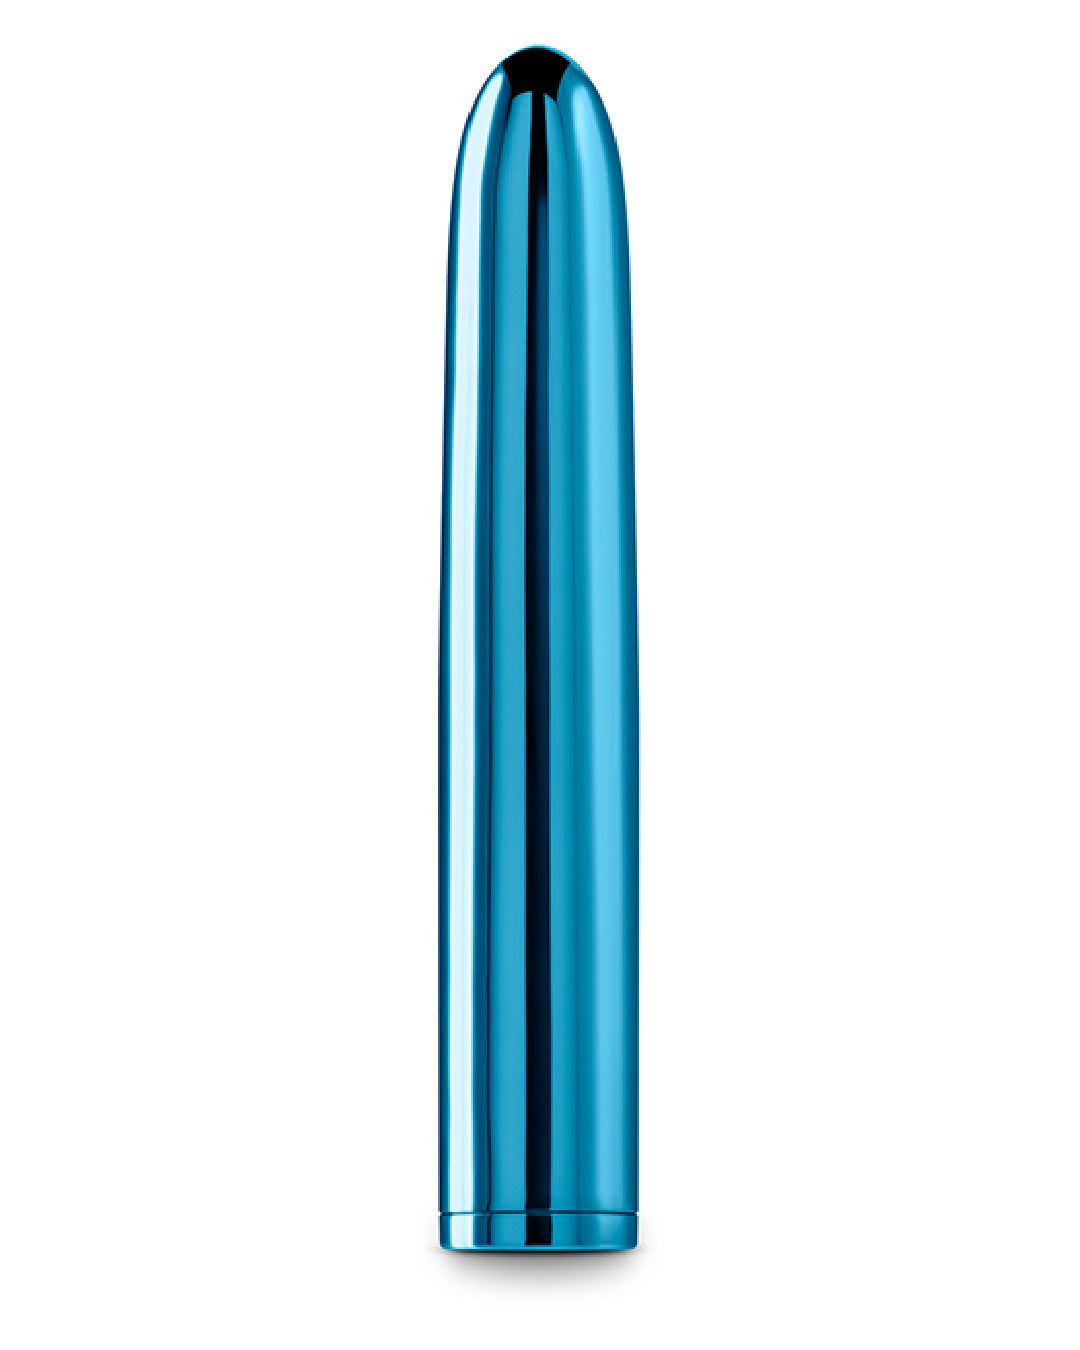 Chroma Insertable Beginner Bullet Vibrator - Teal upright 